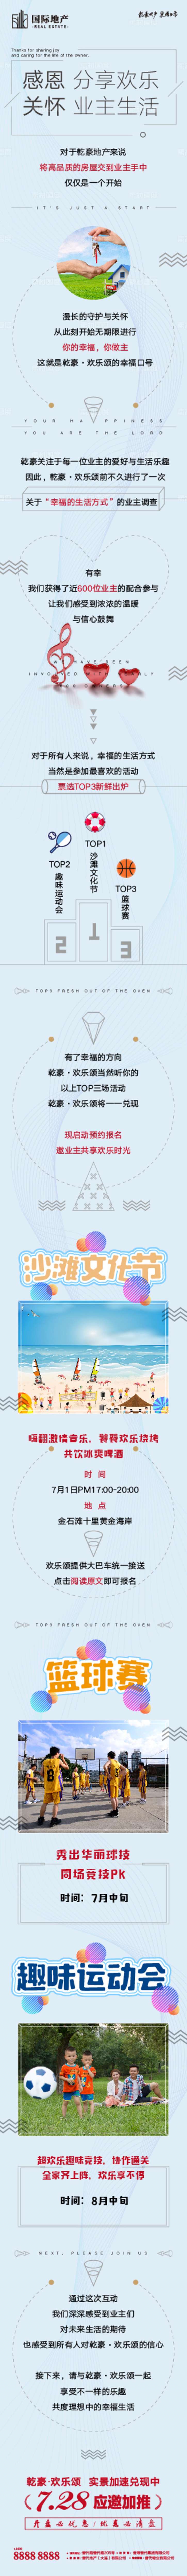 沙滩文化节业主暖场活动微信海报长图